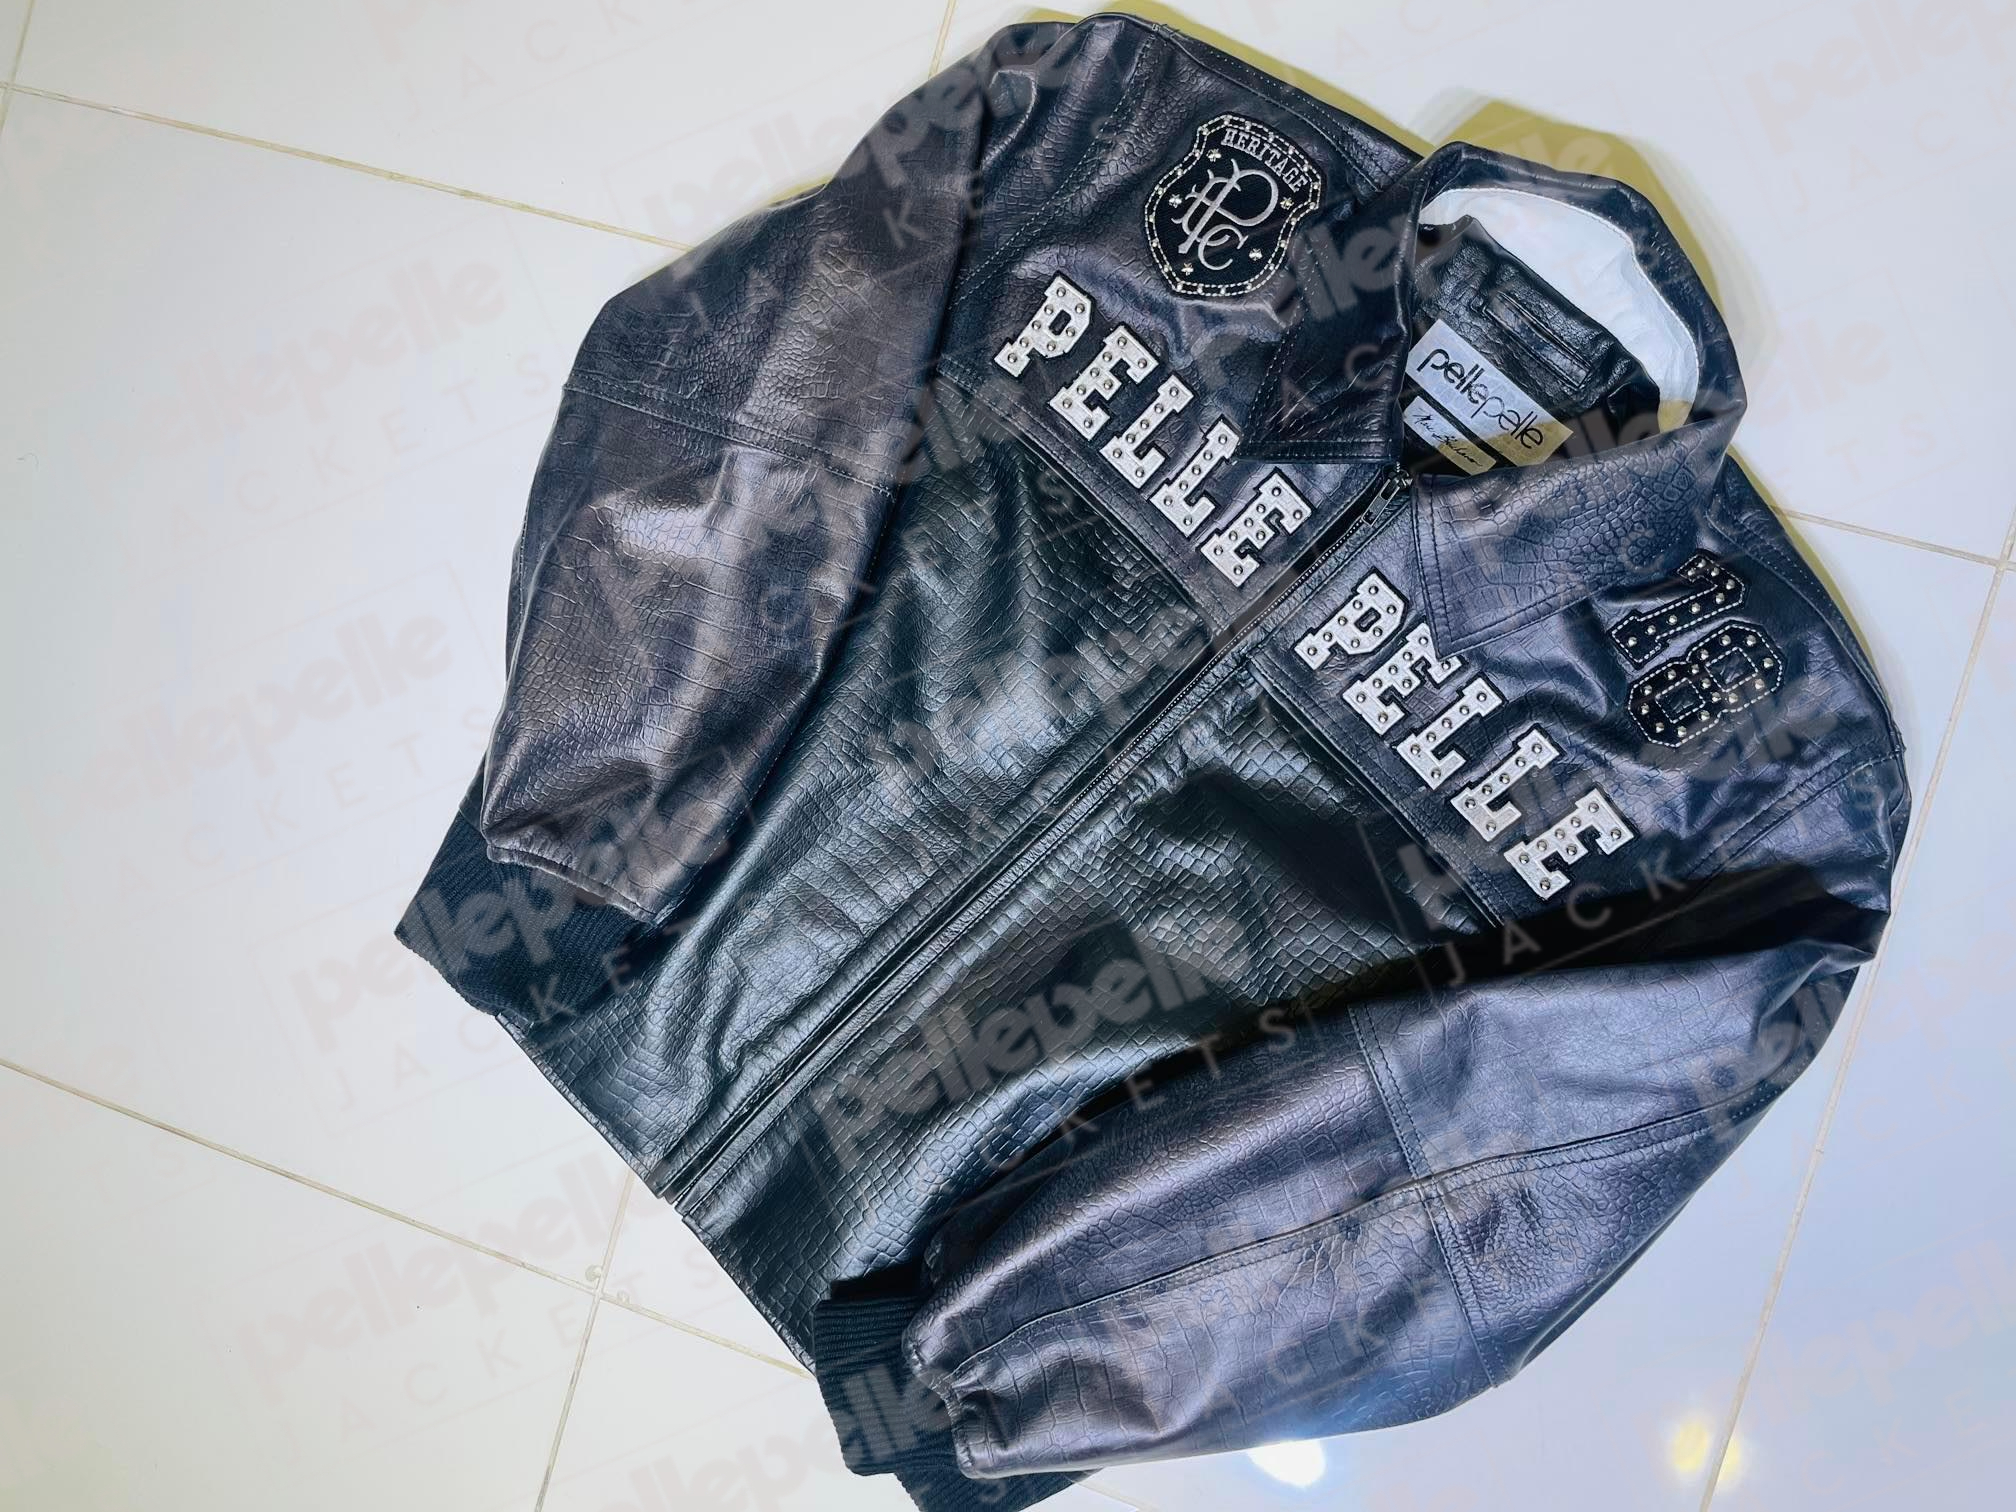 Pelle-Pelle-Black-78-Crocodile-Leather-Jacket.jpg